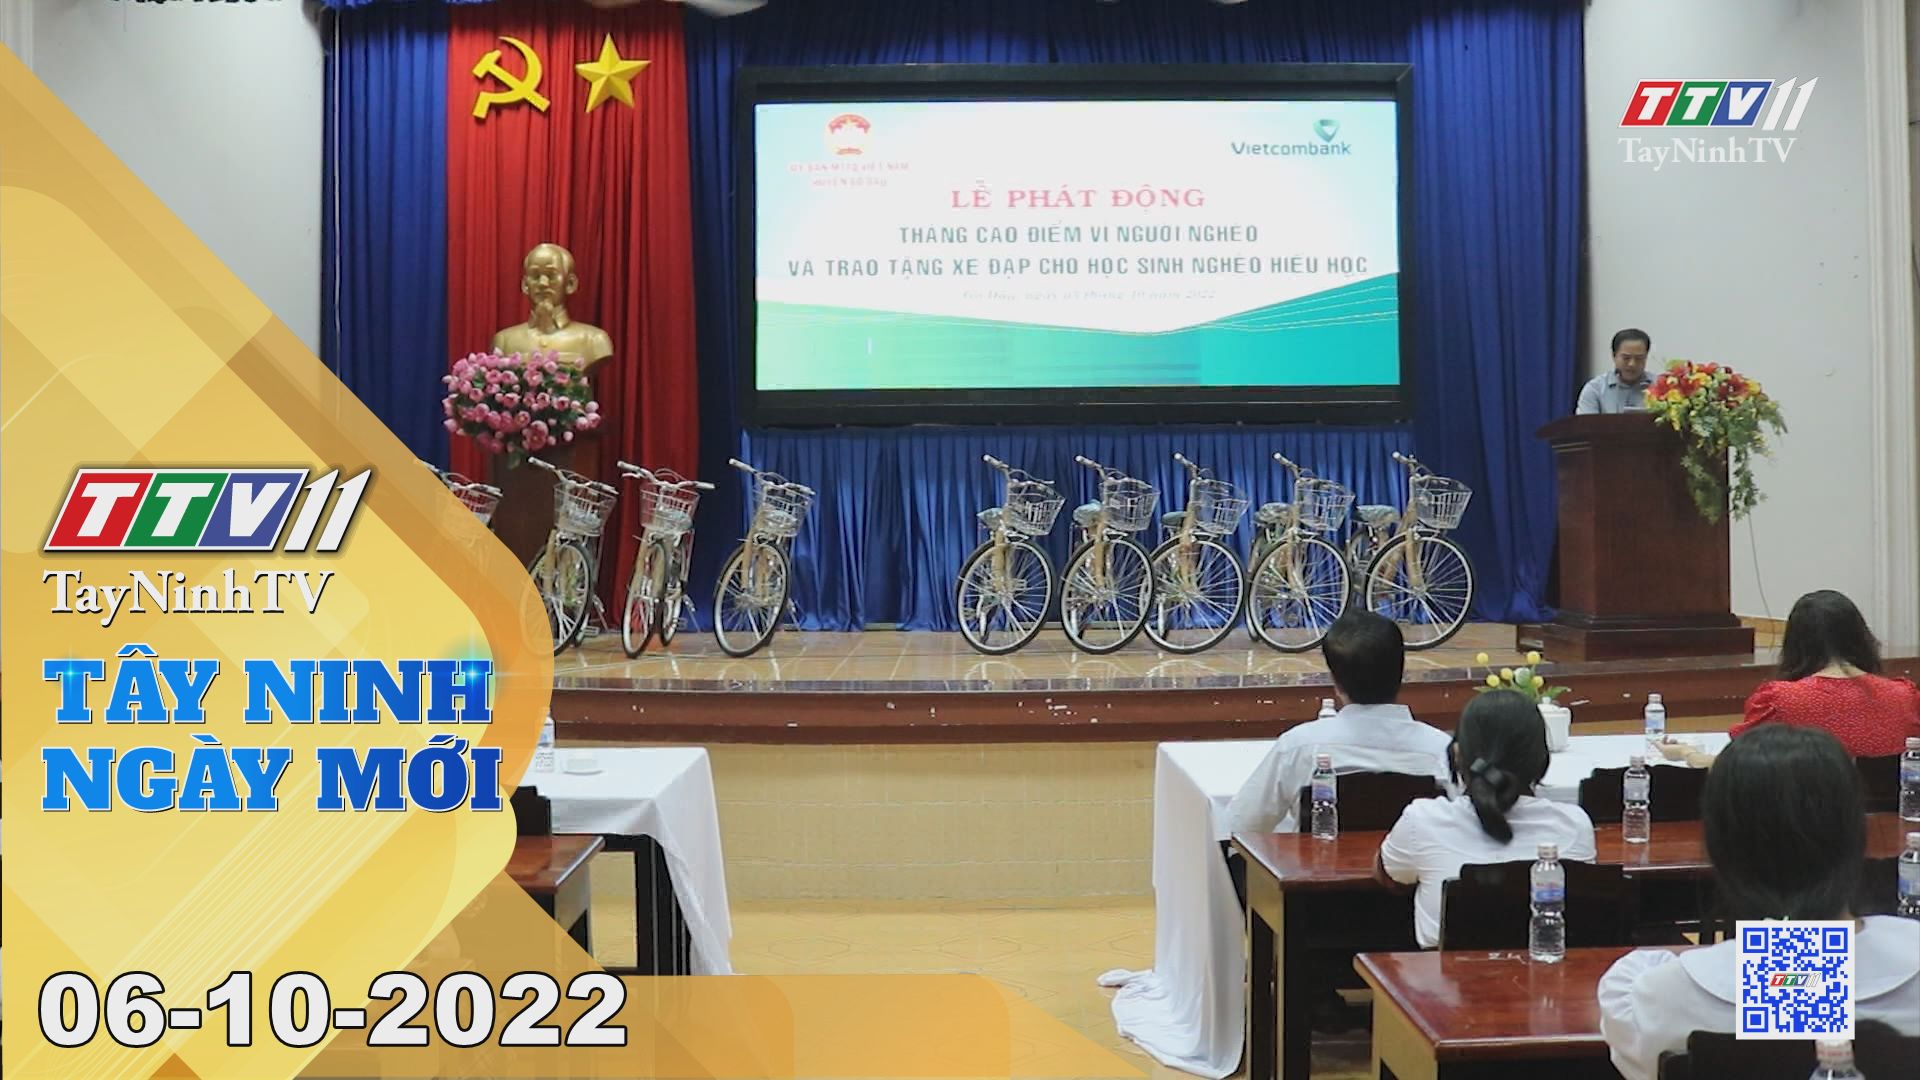 Tây Ninh ngày mới 06-10-2022 | Tin tức hôm nay | TayNinhTV